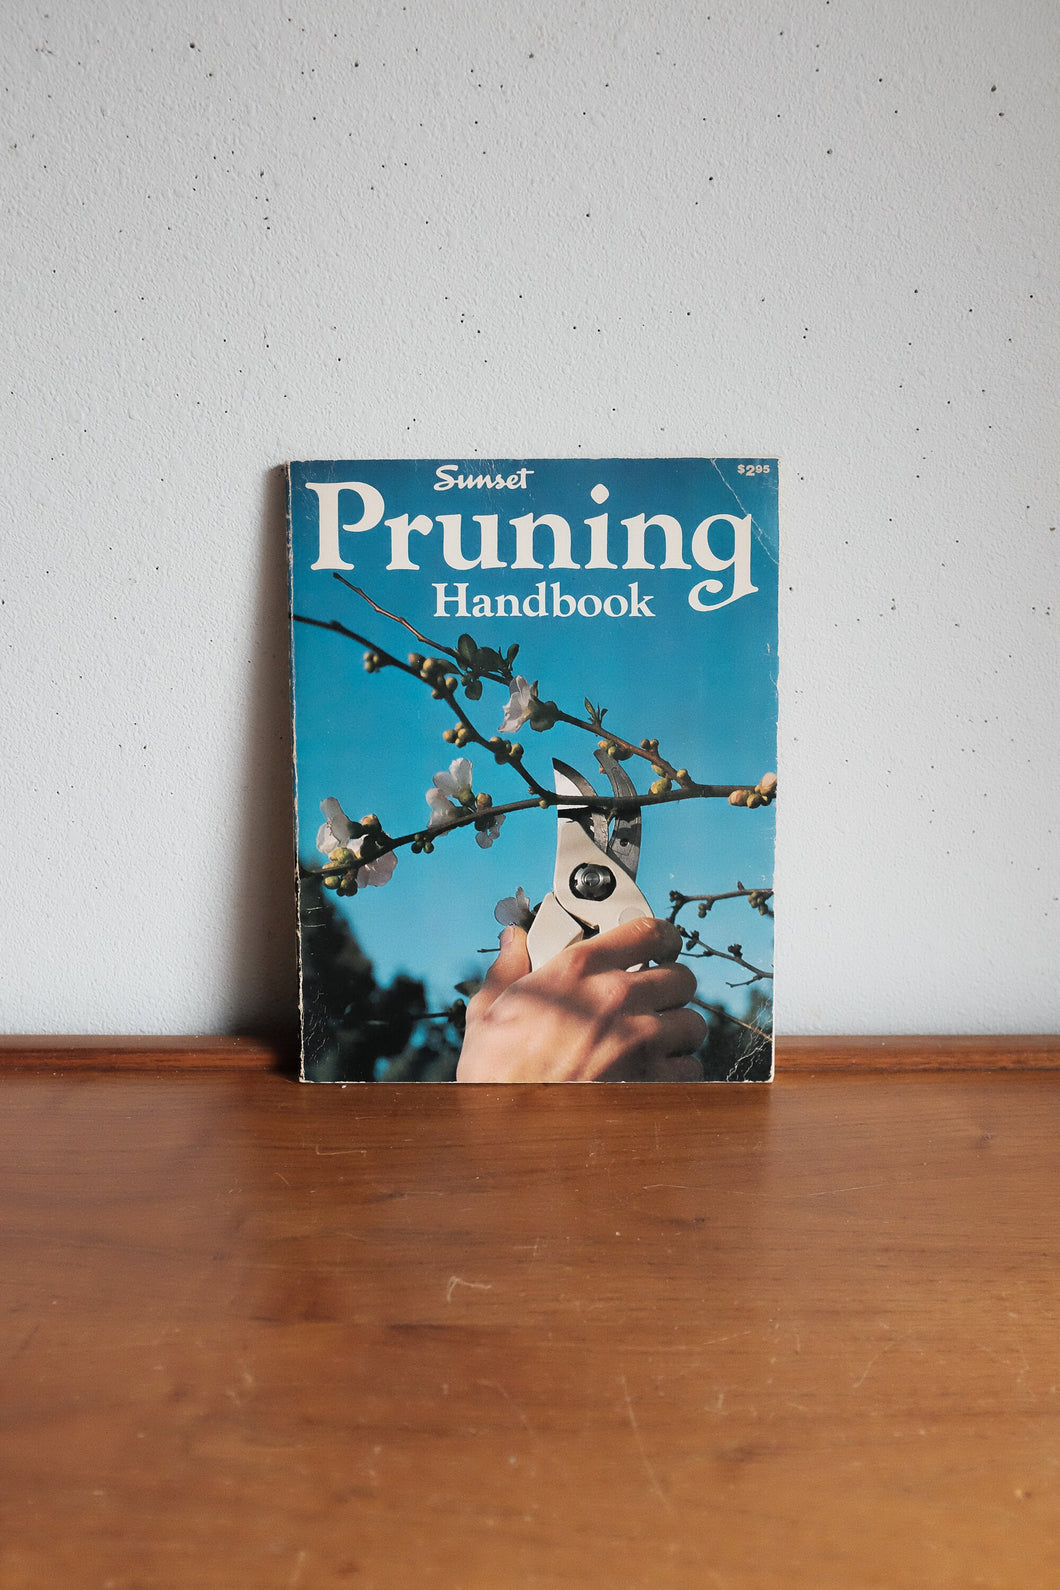 Vintage Sunset Book - Pruning handbook 1978